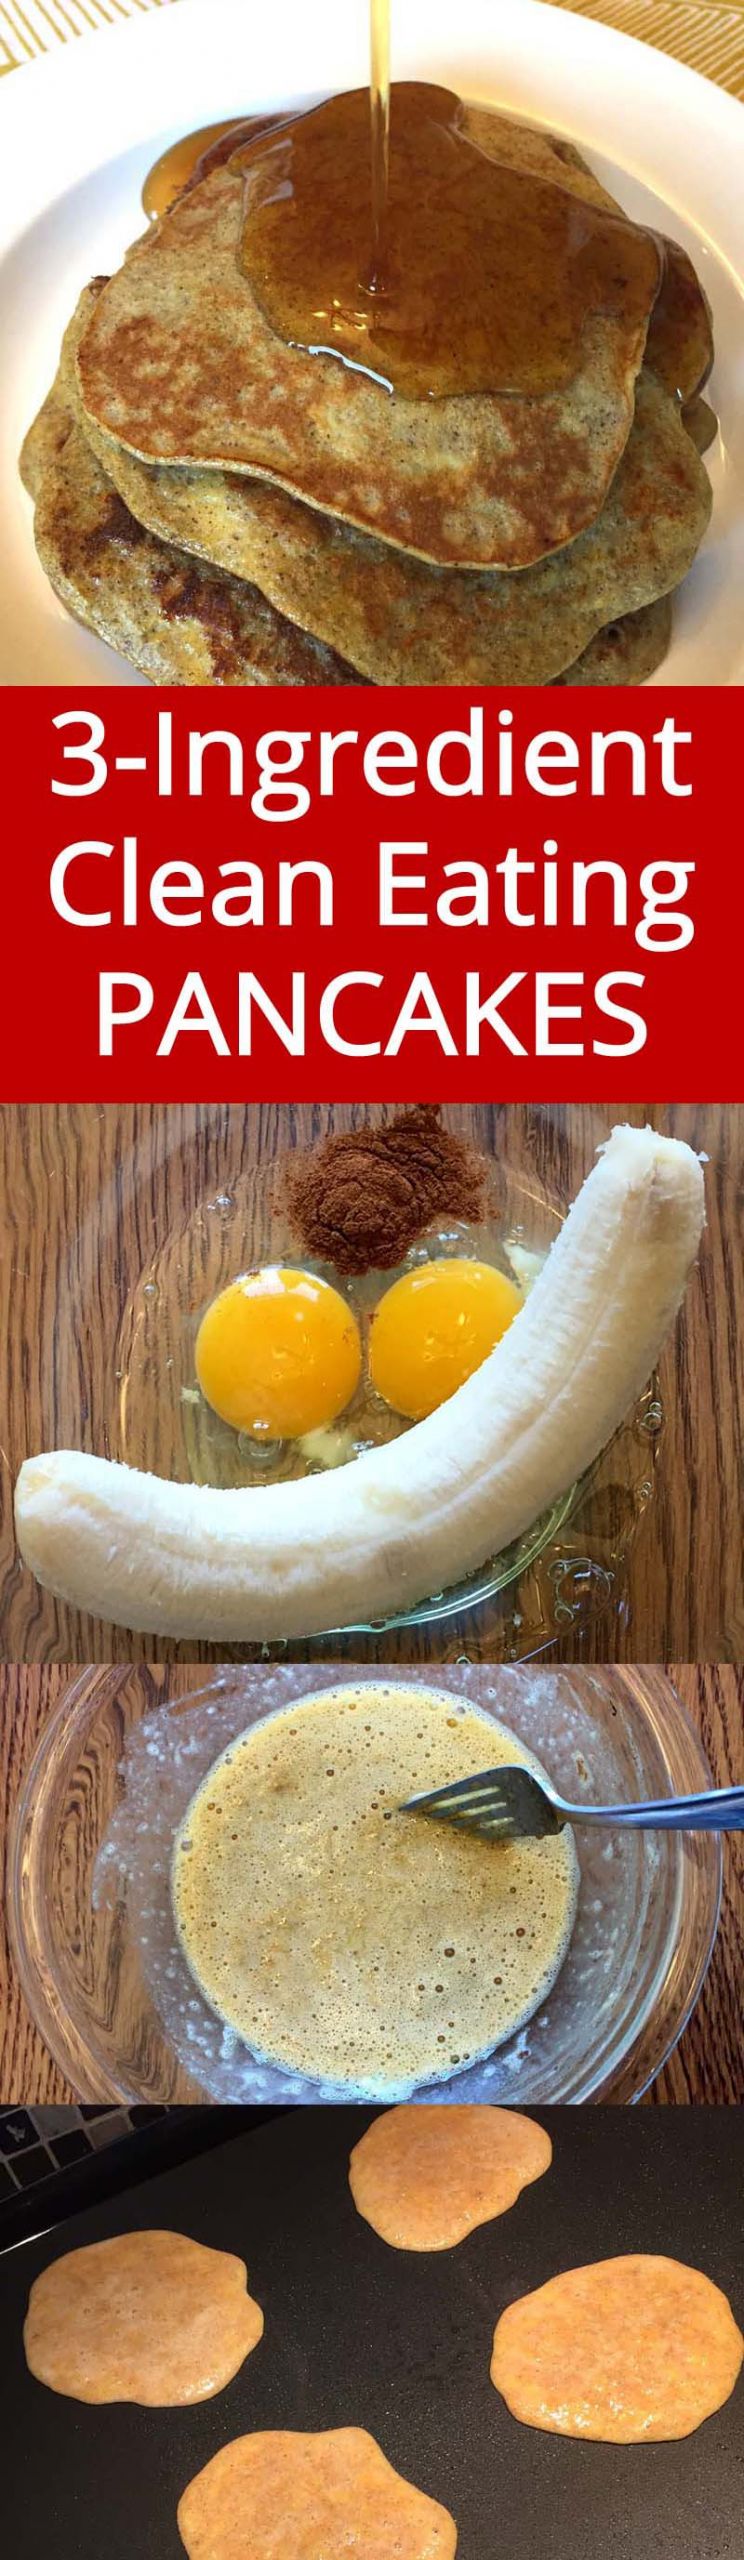 Banana Egg Pancakes Recipe
 Healthy 3 Ingre nt Banana Pancakes – Gluten Free Clean